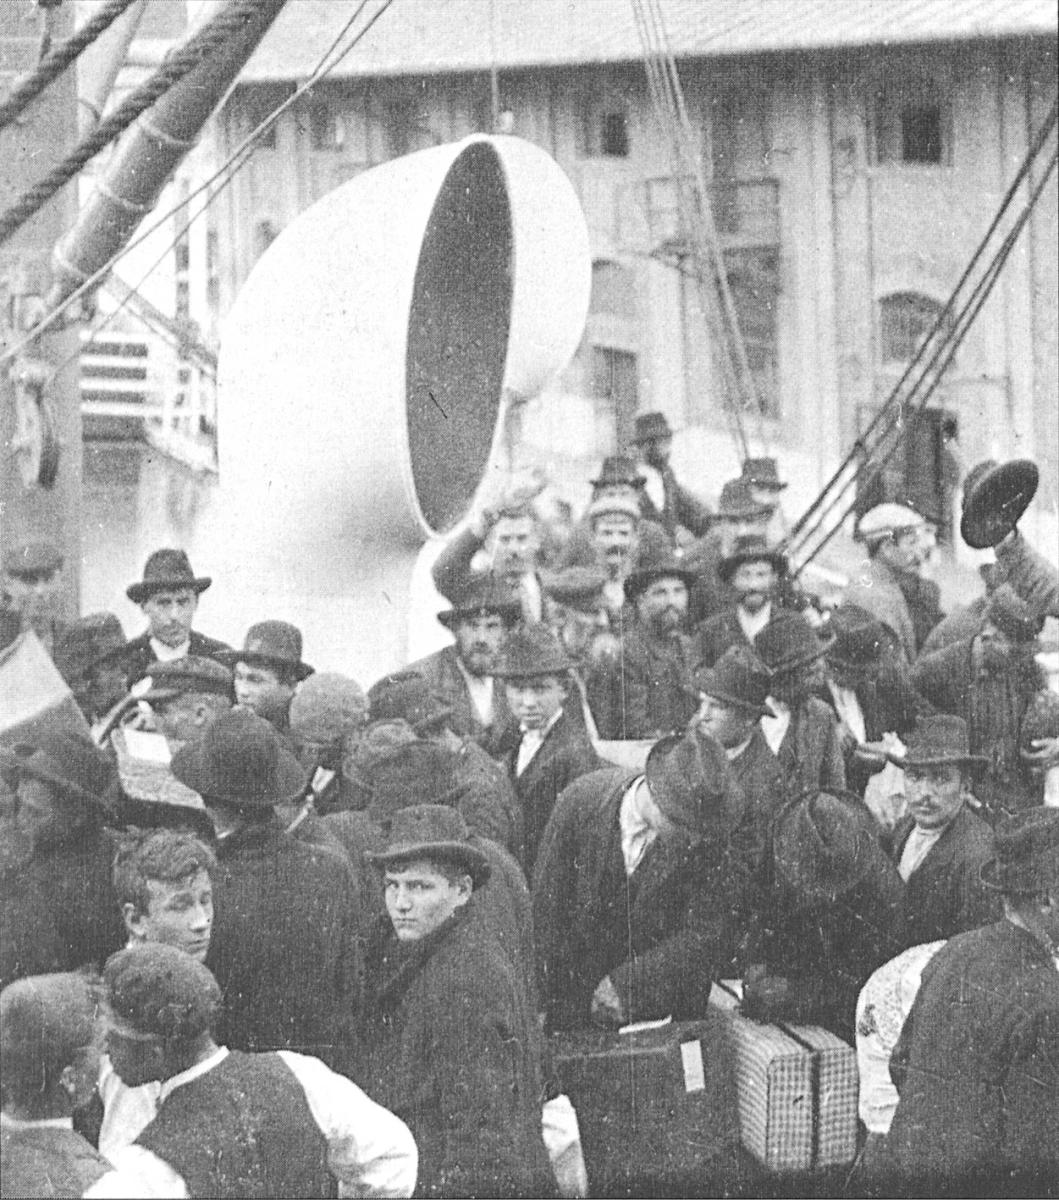 Auswanderer aus Österreich-Ungarn bei der Abreise in Triest auf einem Schiff der Austro-Americana, Bildquelle: https://commons.wikimedia.org/wiki/File:AustroAmericana_Auswanderer2.jpg